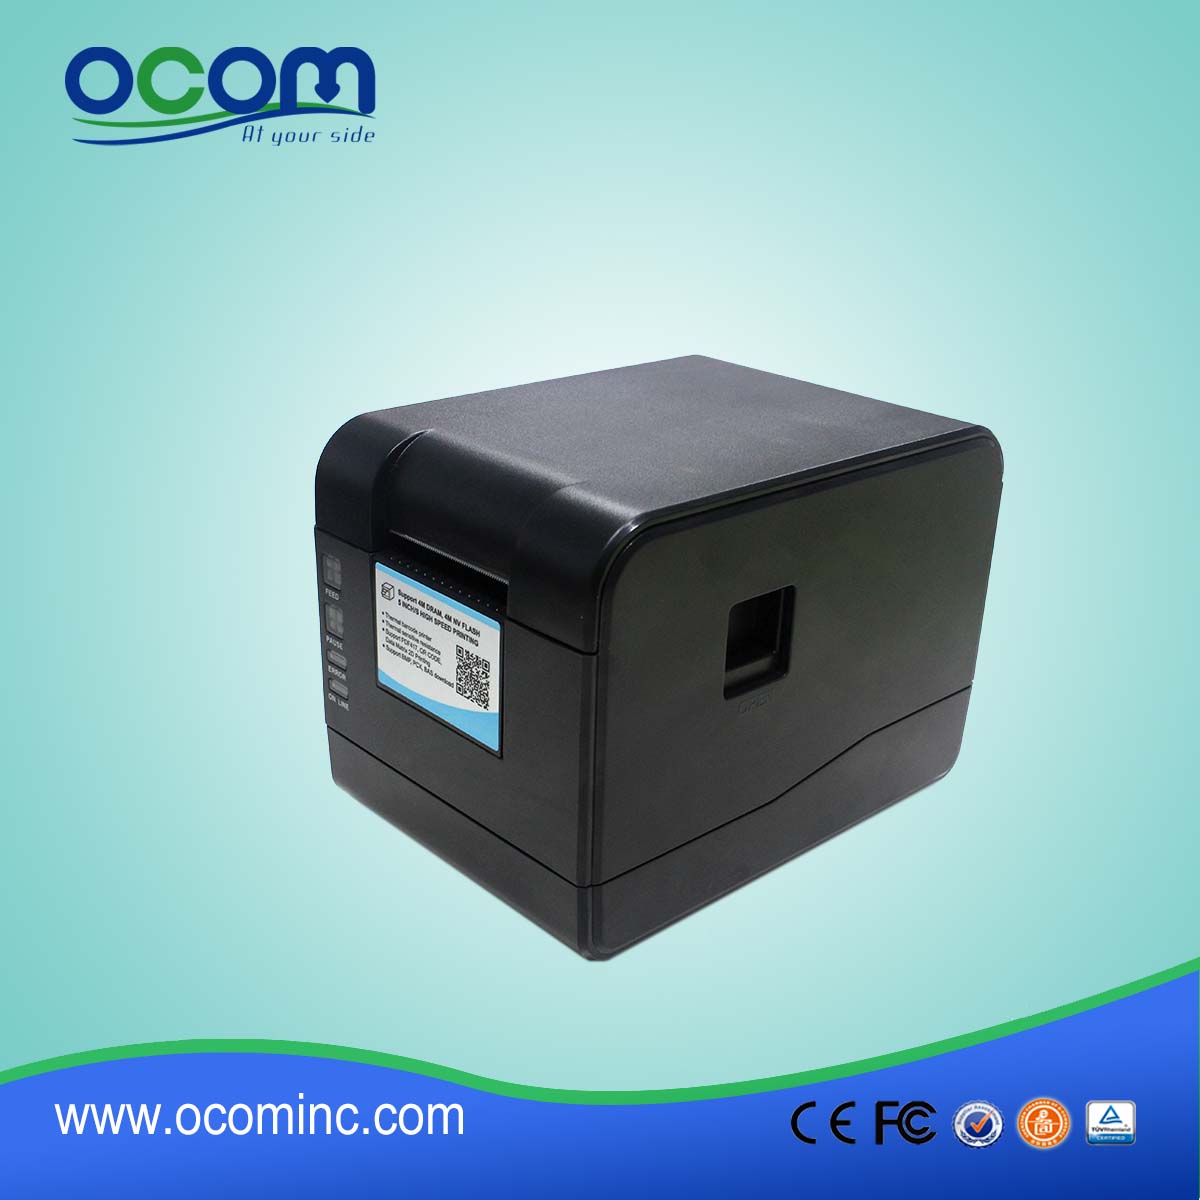 OCBP-006 2 "Thermodirekt-Barcode-Etikettendrucker Unterstützung Thermorollenpapier / Klebepapier